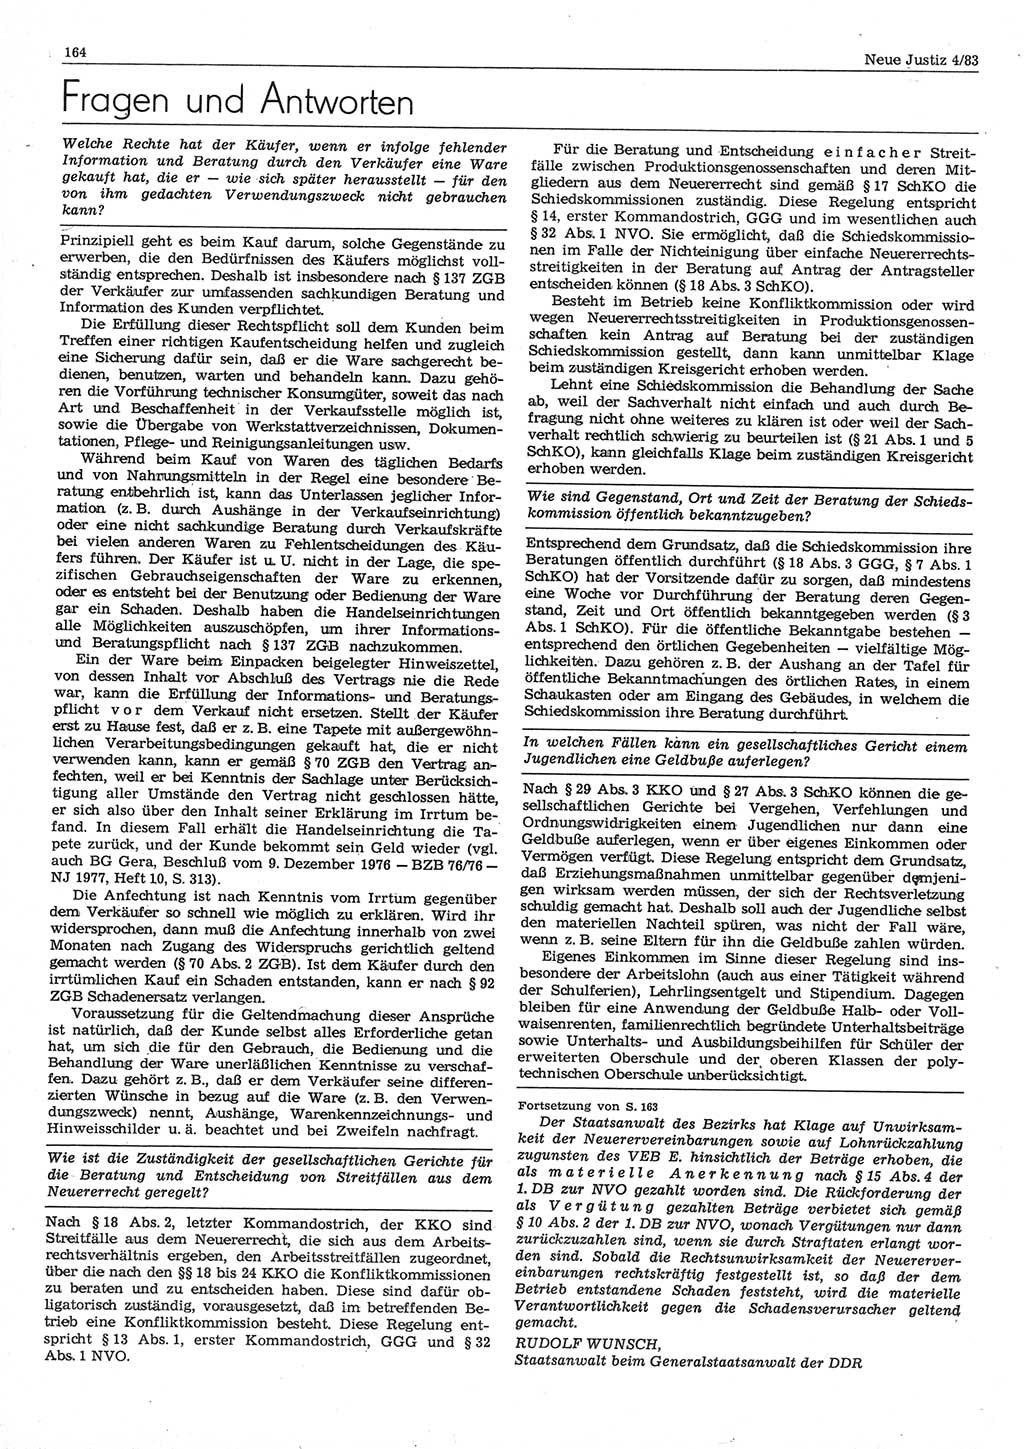 Neue Justiz (NJ), Zeitschrift für sozialistisches Recht und Gesetzlichkeit [Deutsche Demokratische Republik (DDR)], 37. Jahrgang 1983, Seite 164 (NJ DDR 1983, S. 164)